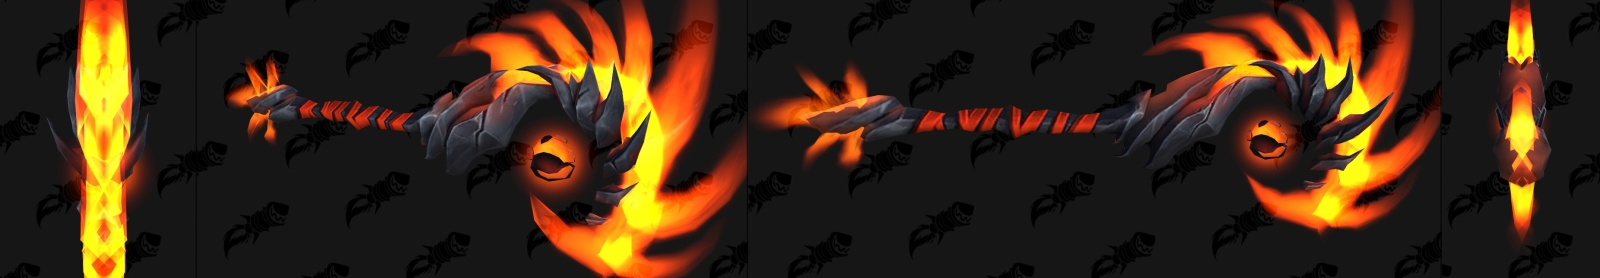 Dragonflight : modèle de bâton à deux mains (raid)